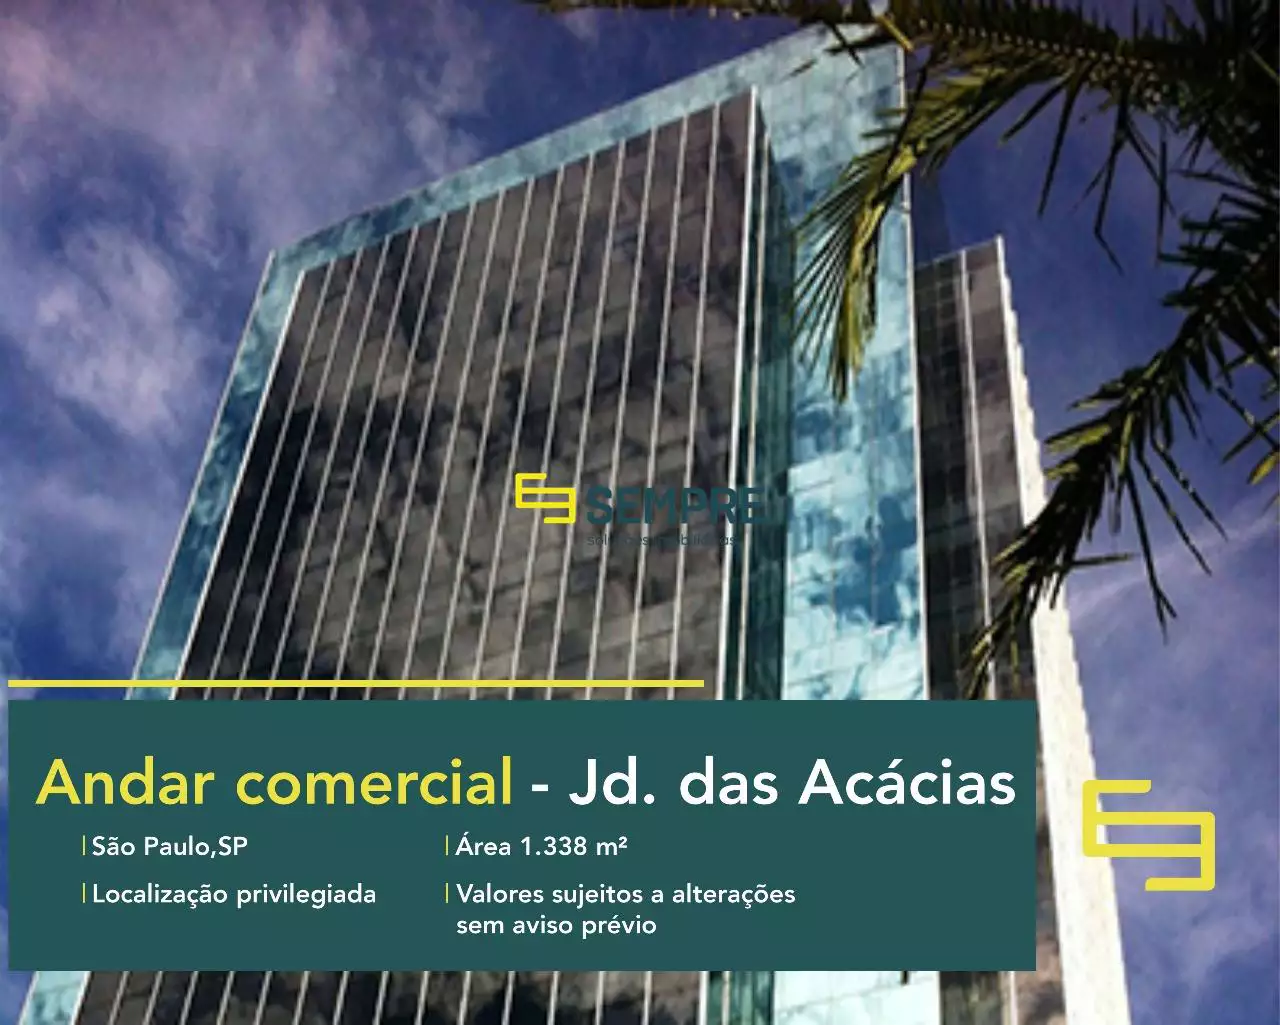 Laje corporativa no Jardim das Acácias em São Paulo, em excelente localização. O estabelecimento comercial conta com área de 1.338,66 m².